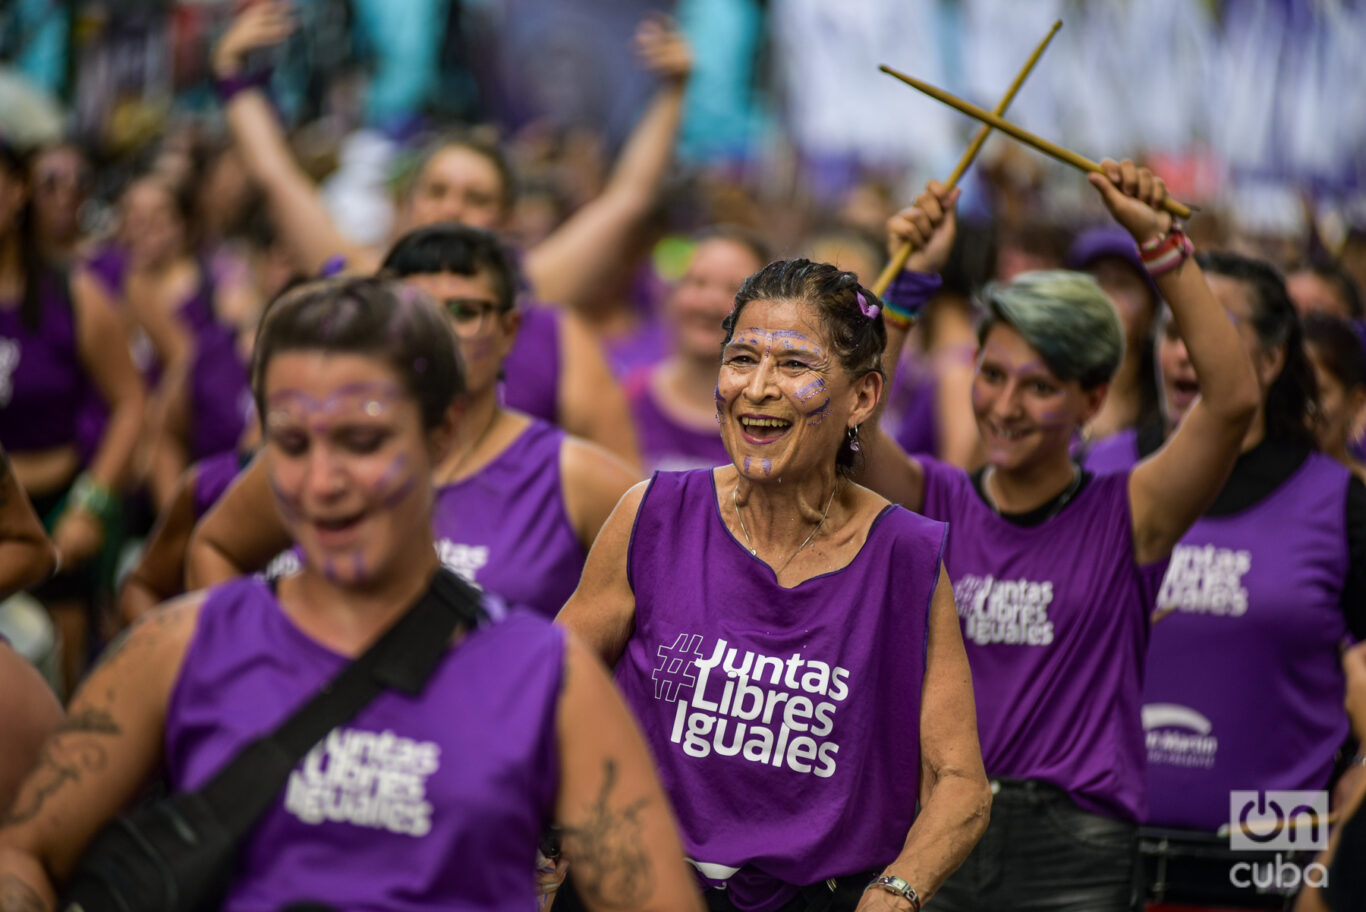 Juntas, libres, iguales, una de las consignas de los colectivos de mujeres presentes en la marcha del 8M en Buenos Aires. Foto: Kaloian.